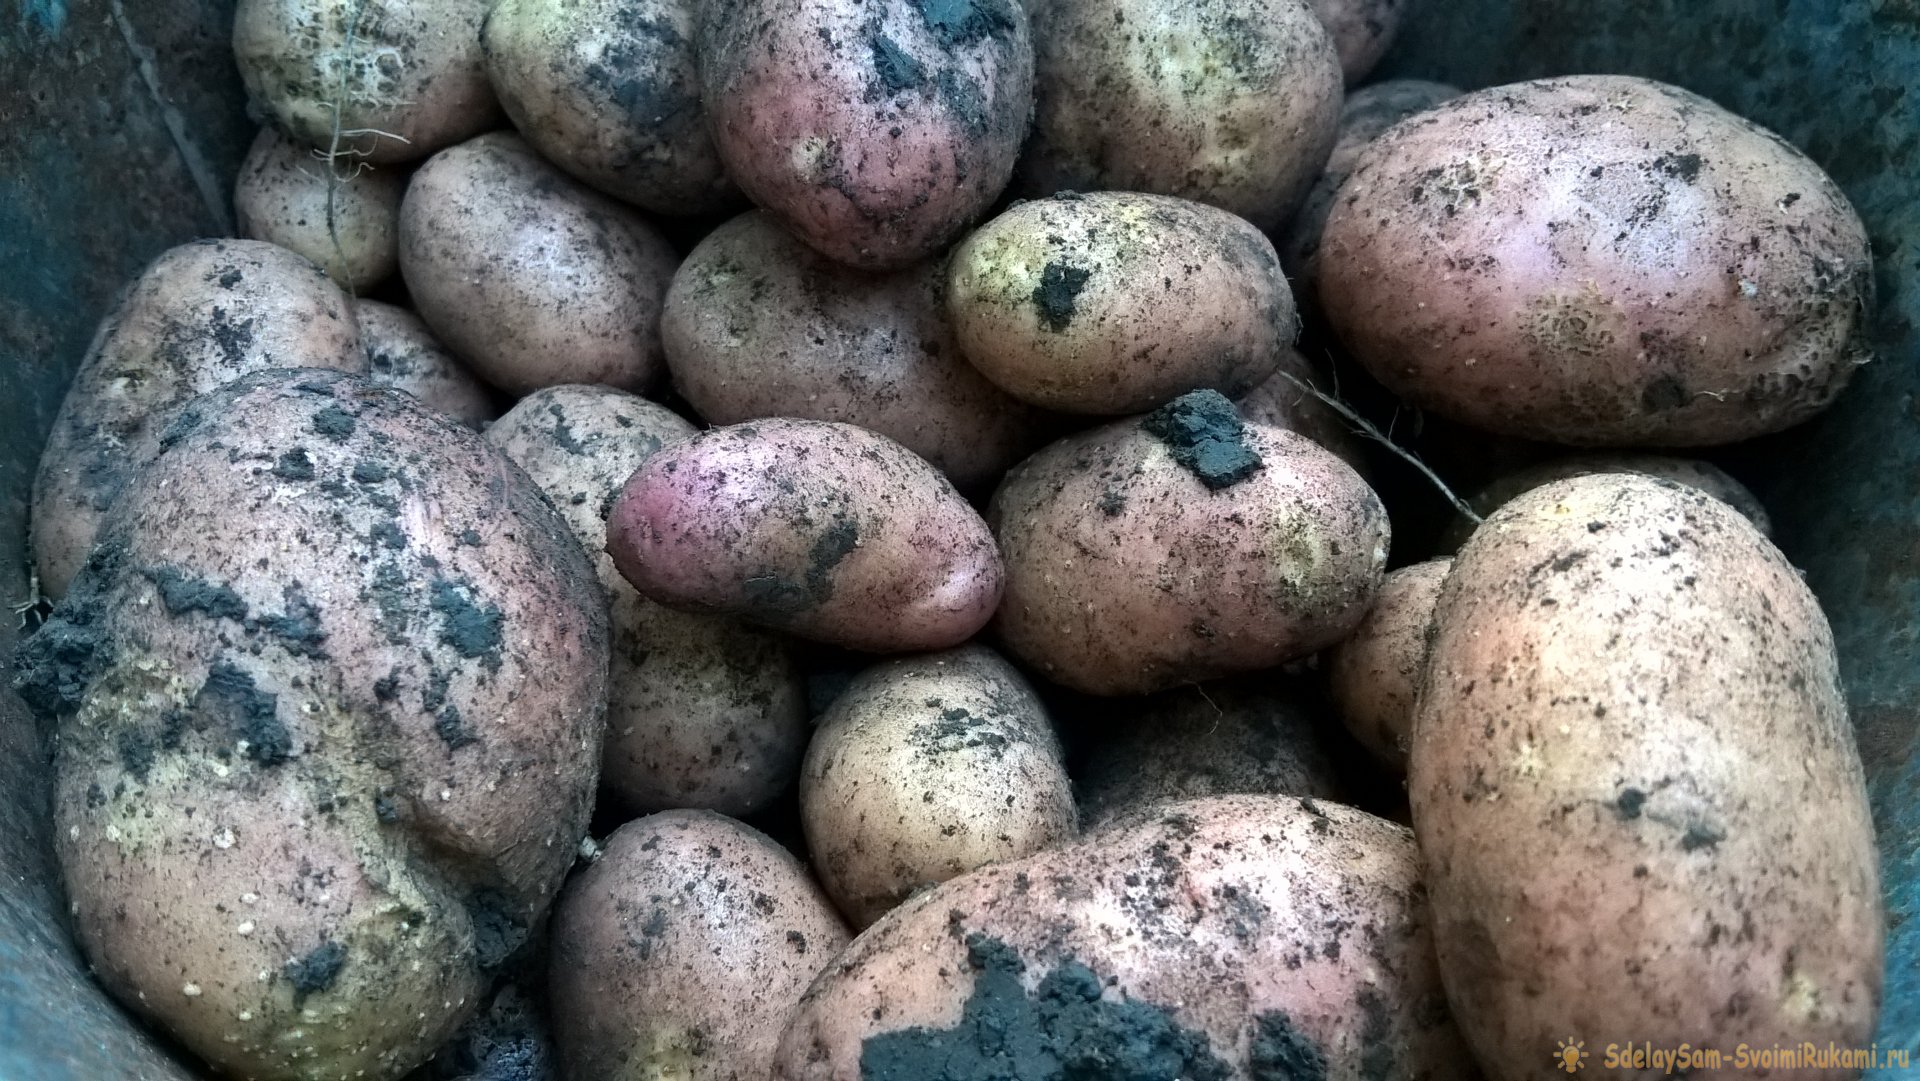 Августовская уборка картофеля. Главное – о предварительной подготовке, правилах выкапывания и секретах зимнего хранения клубней